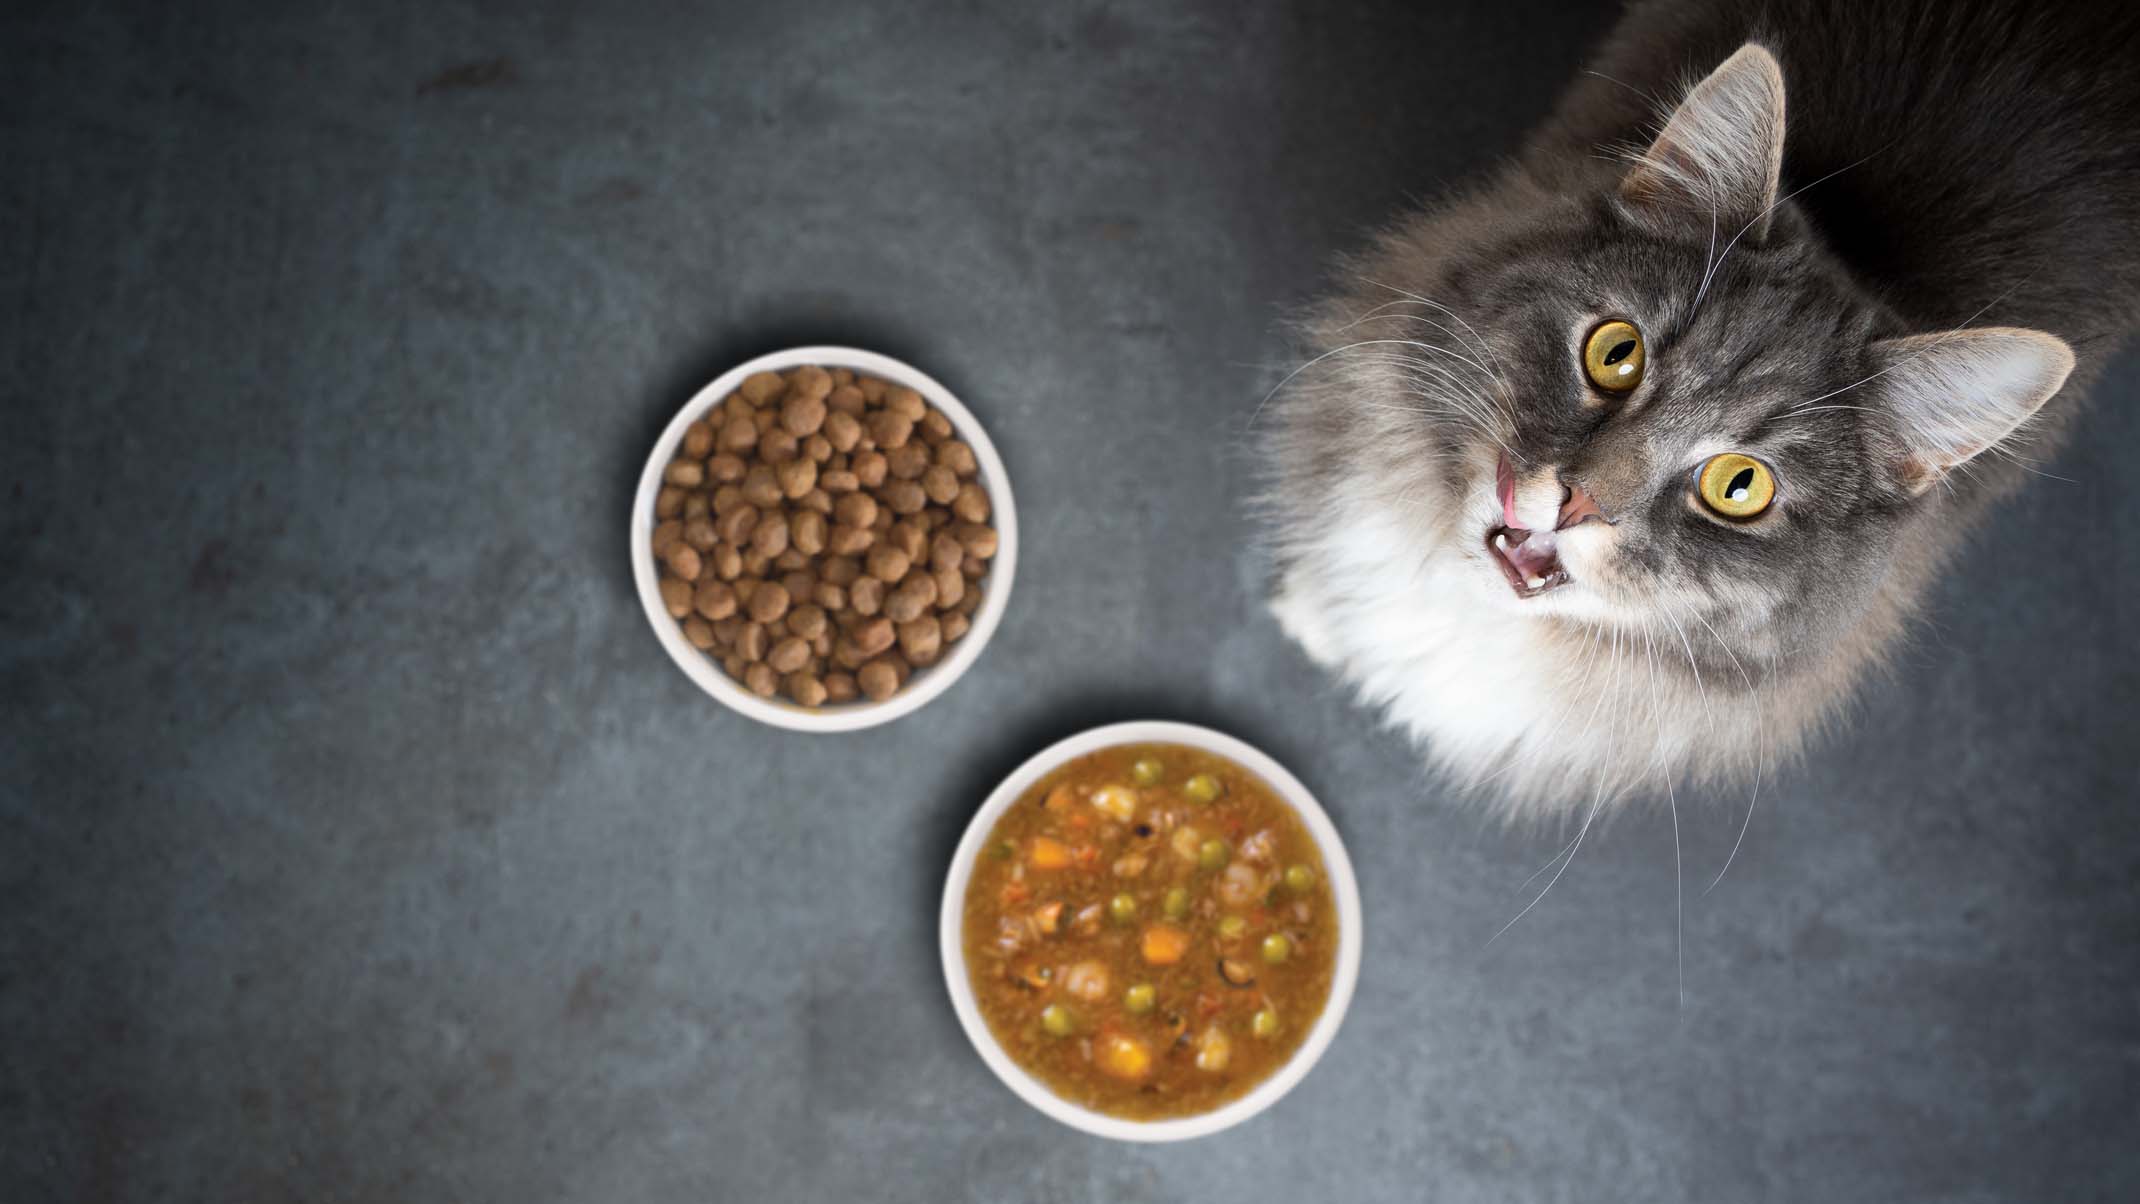 È meglio somministrare cibo secco o umido al gatto? - Catit